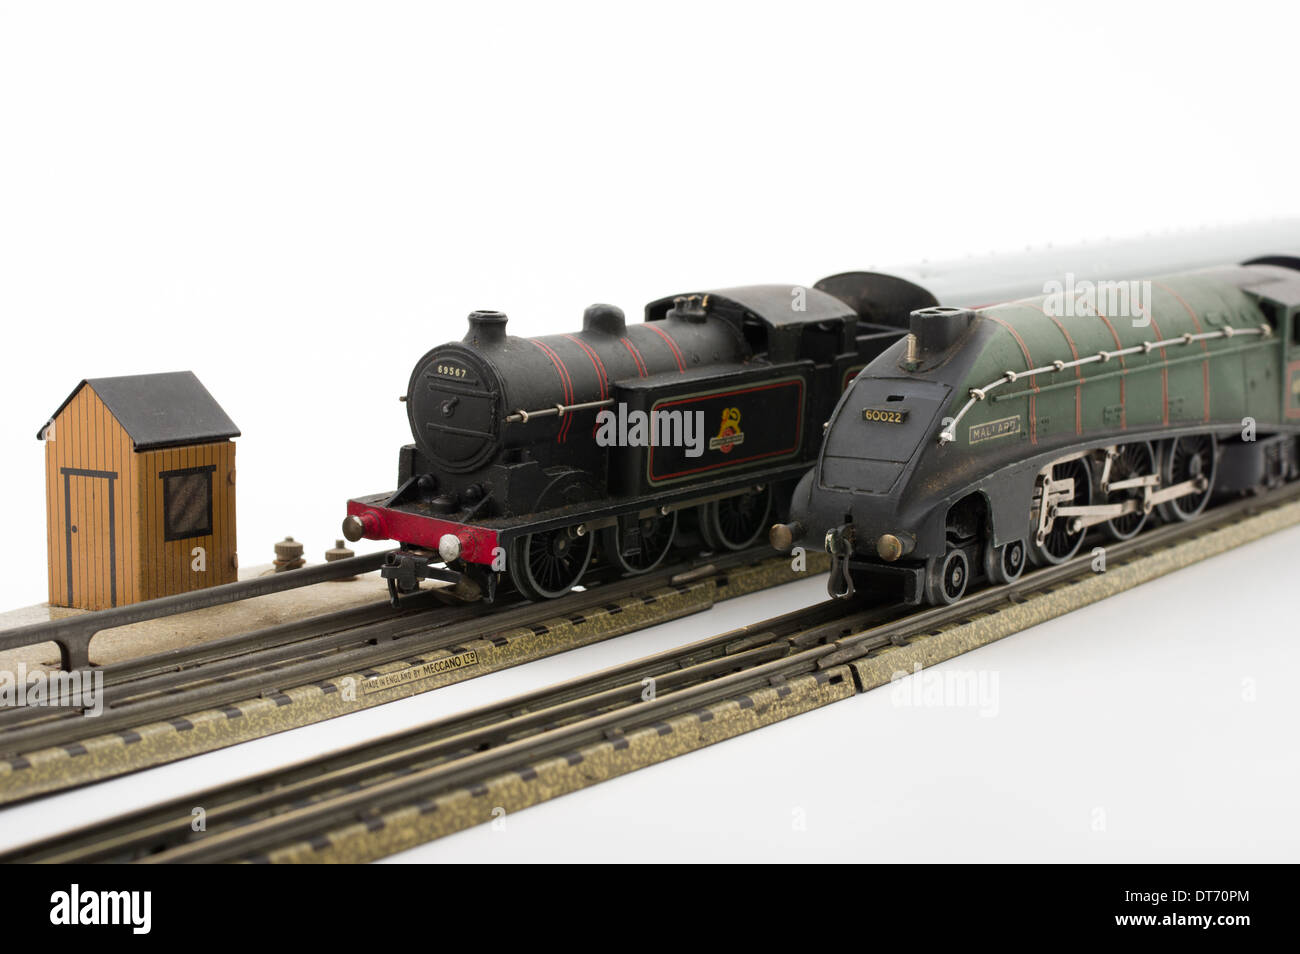 Vert Dublo Hornby Train Modèle Mallard avec EDL17 Locomotive classique Brtiish train jouet pour enfants Banque D'Images